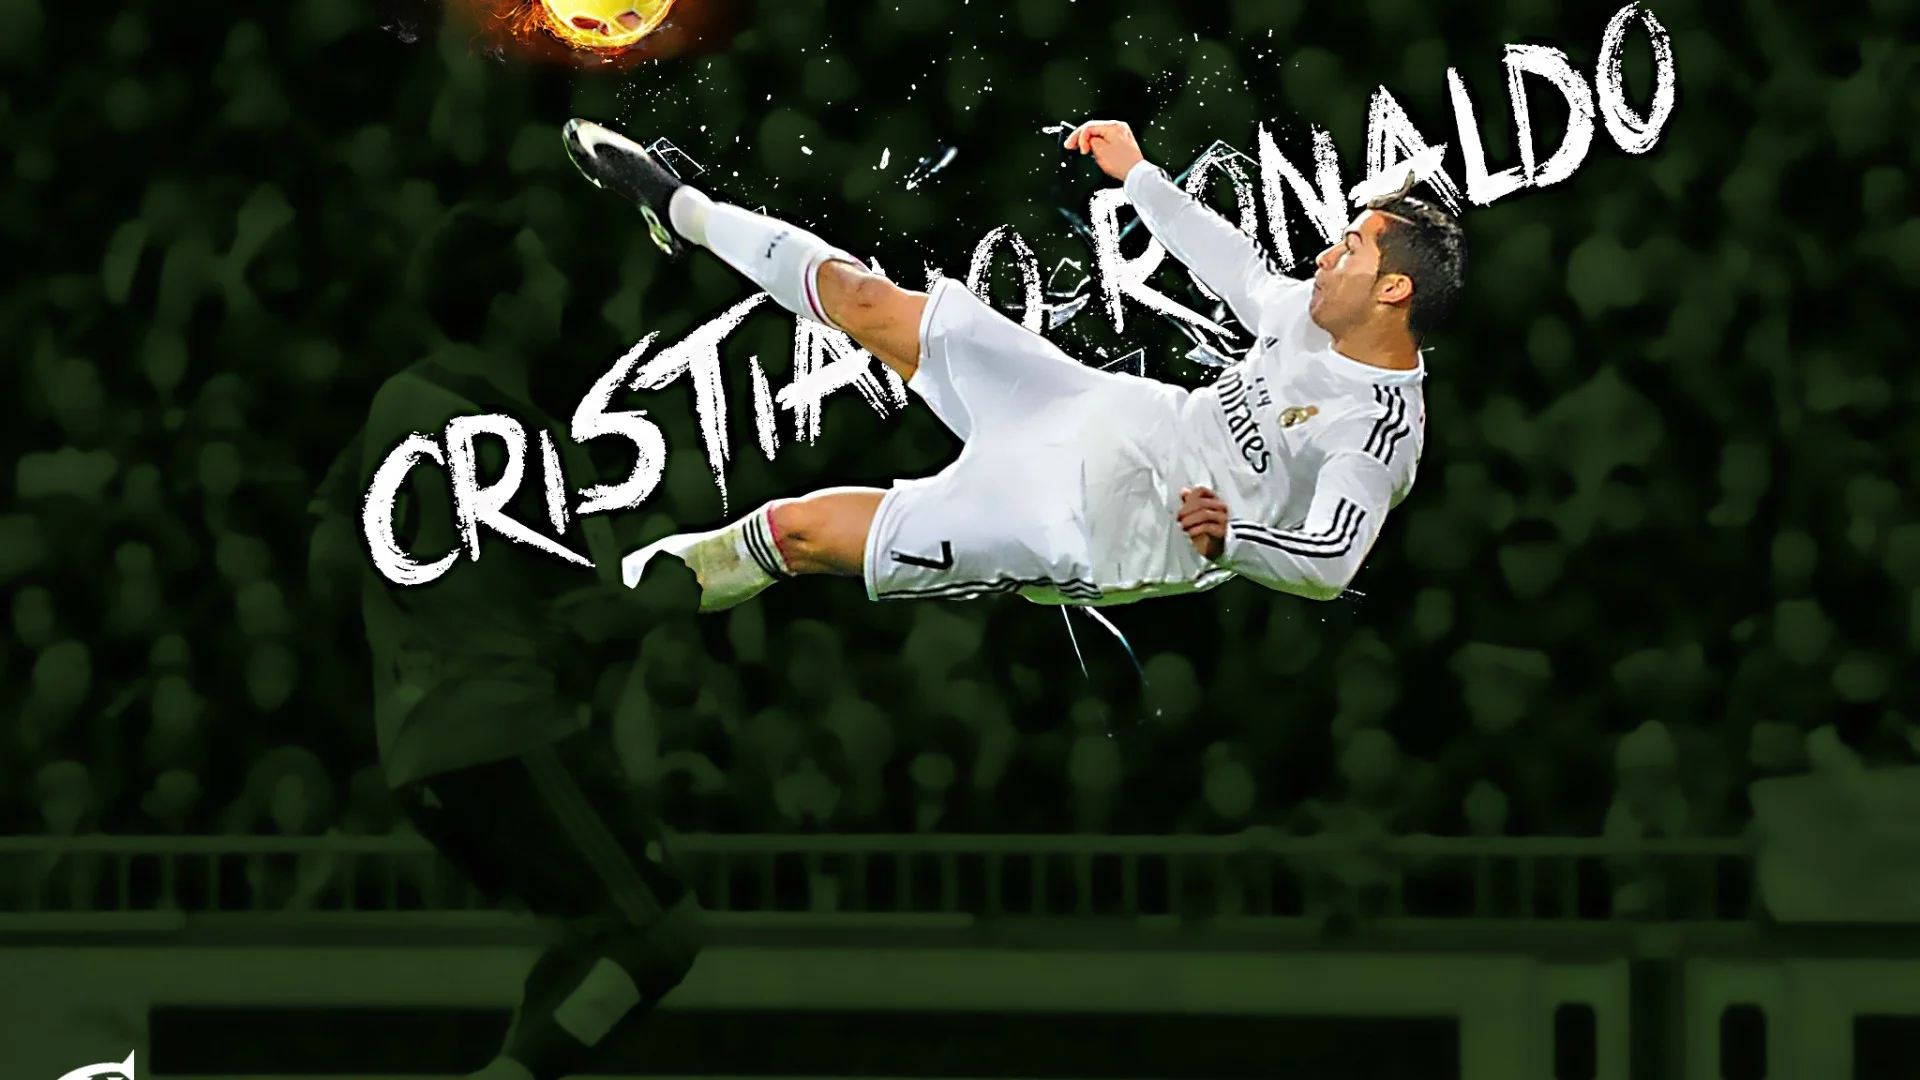 Cristiano ronaldo best skills goals many xxx pic